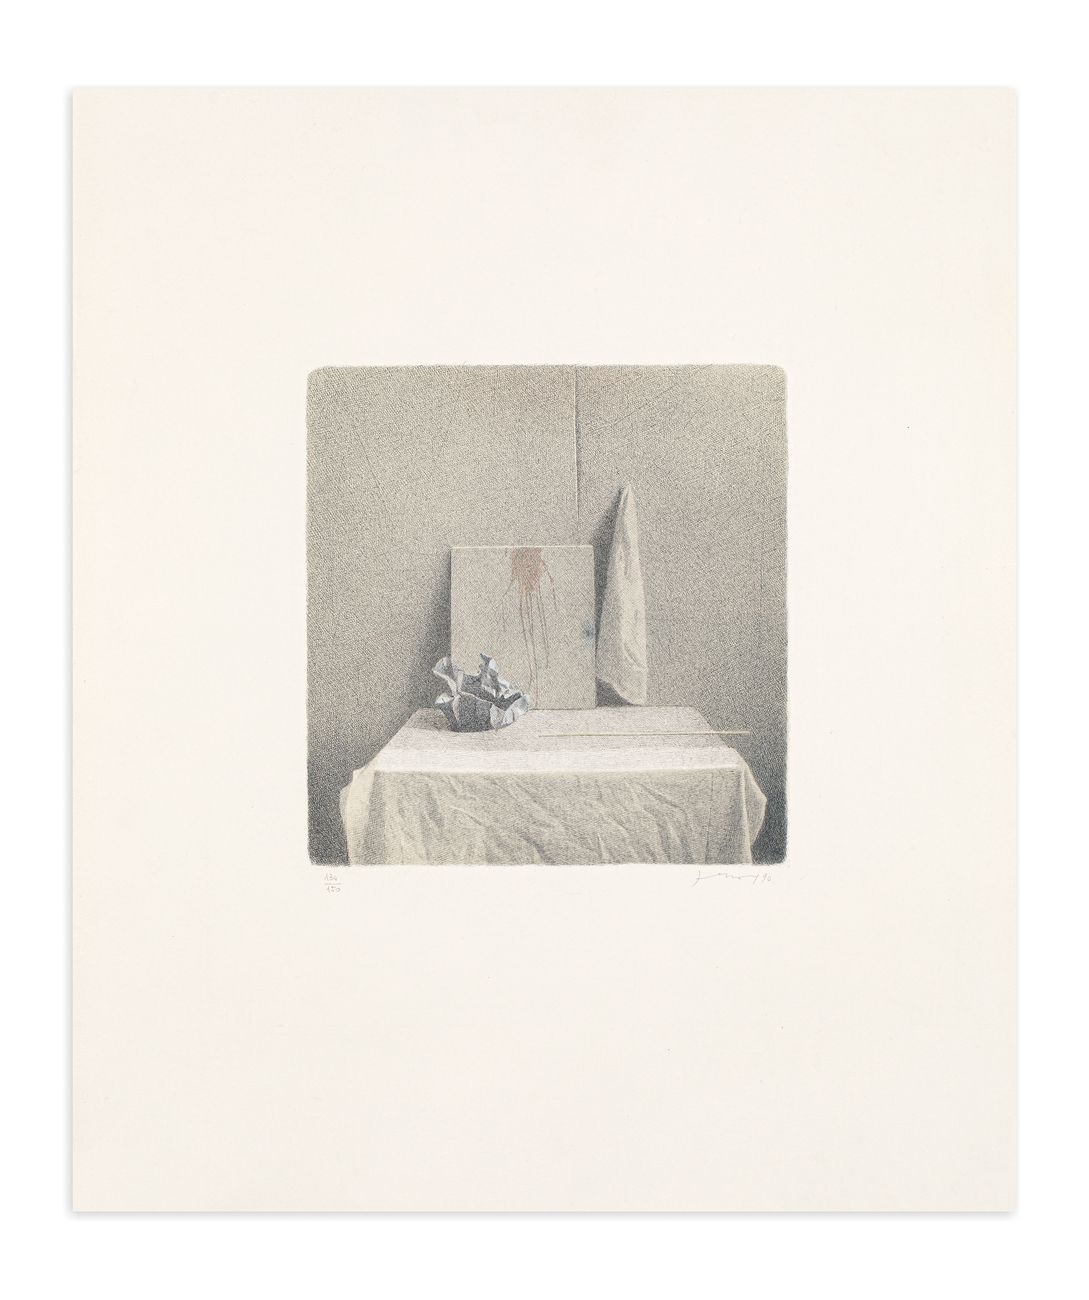 GIANFRANCO FERRONI (1927-2001) - Composizione, 1990 Lithographie

60x50 cm

Sign&hellip;